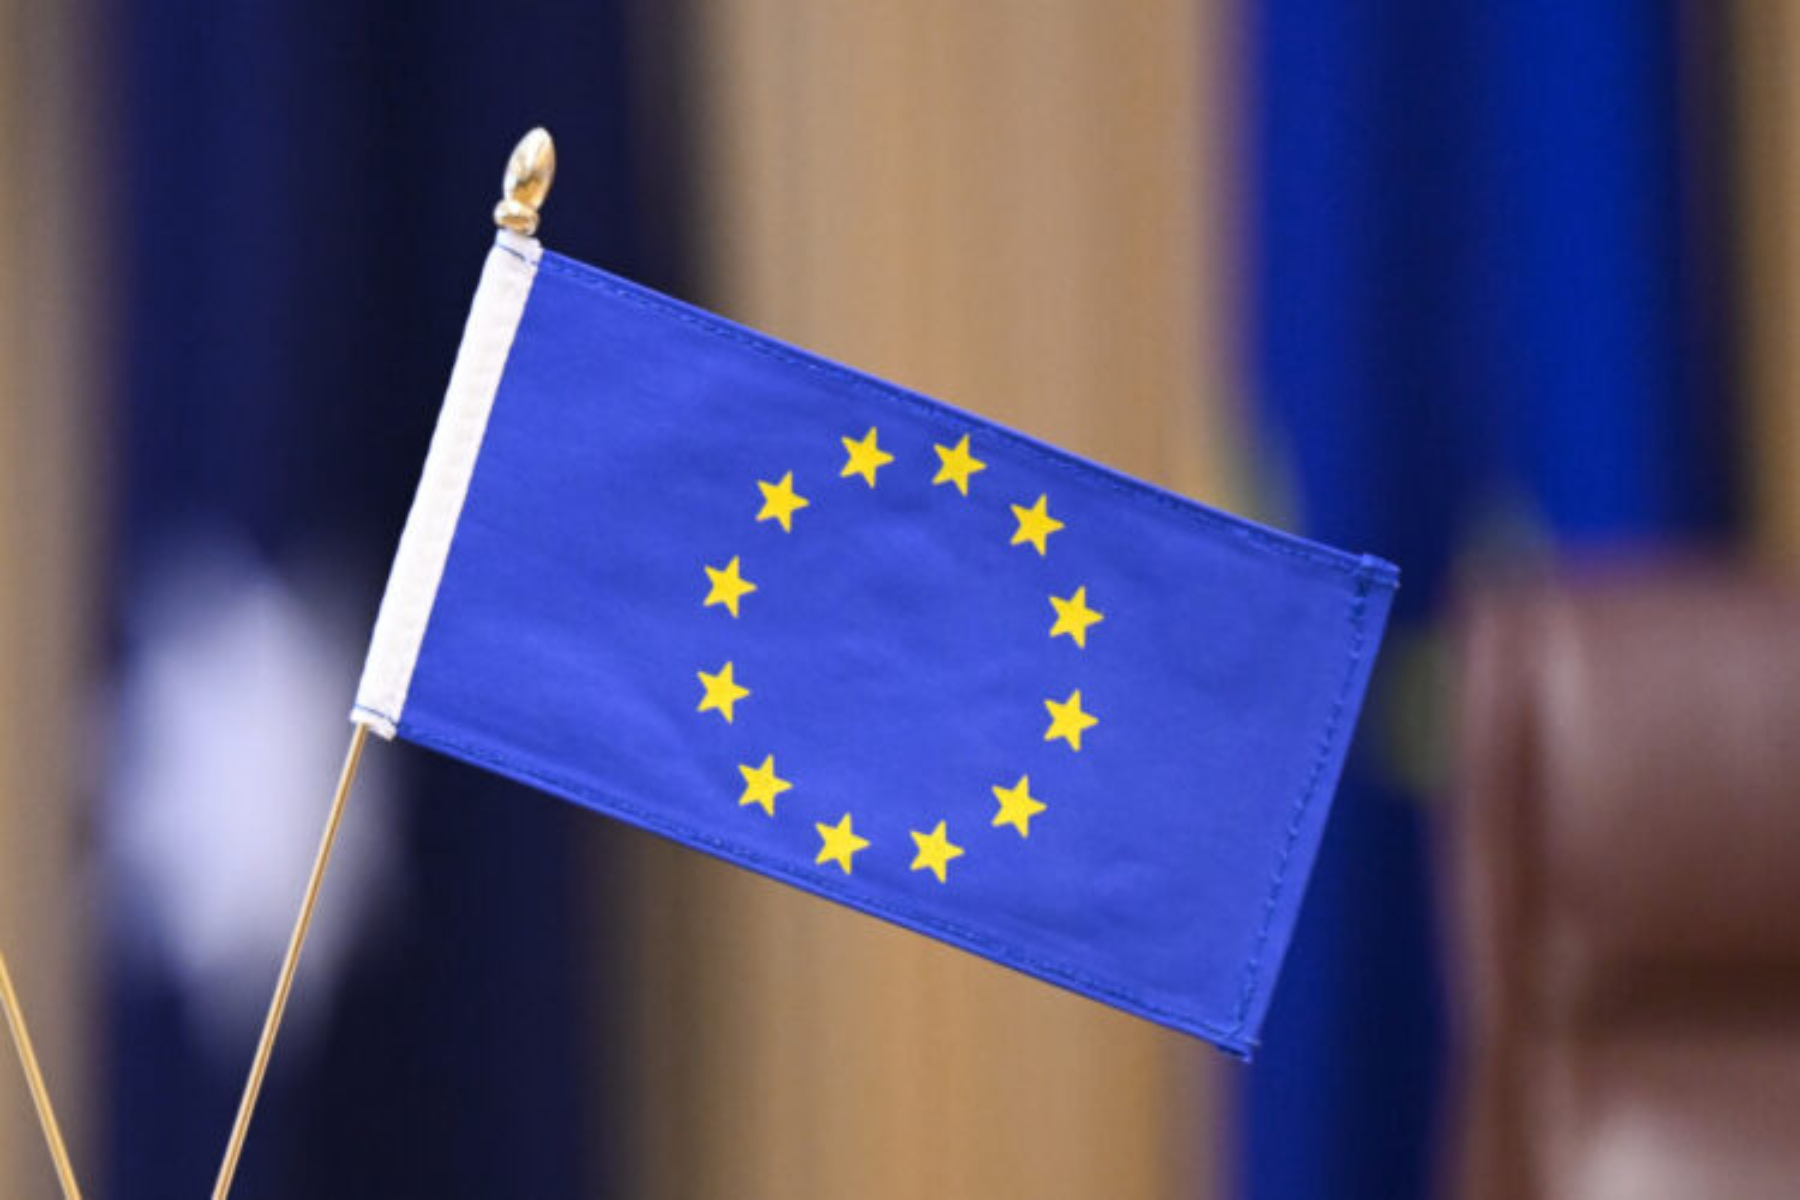 Πρόσθετα σάκχαρα: Η Ευρωπαϊκή Επιτροπή συστήνει την μείωση κατανάλωσης πρόσθετων σακχάρων